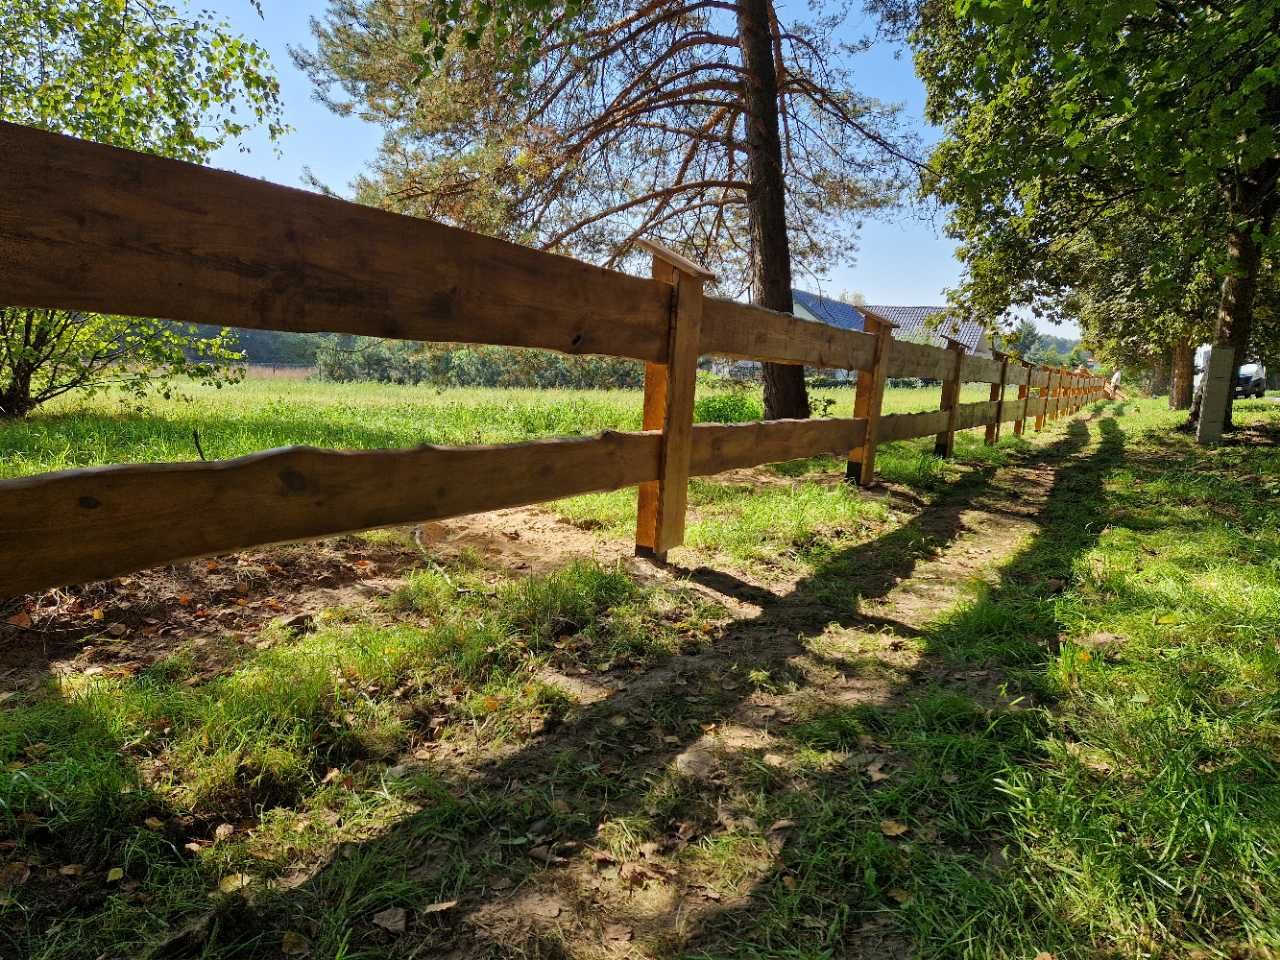 Montaż ogrodzeń farmerskich w stylu ranczo Nasielsk